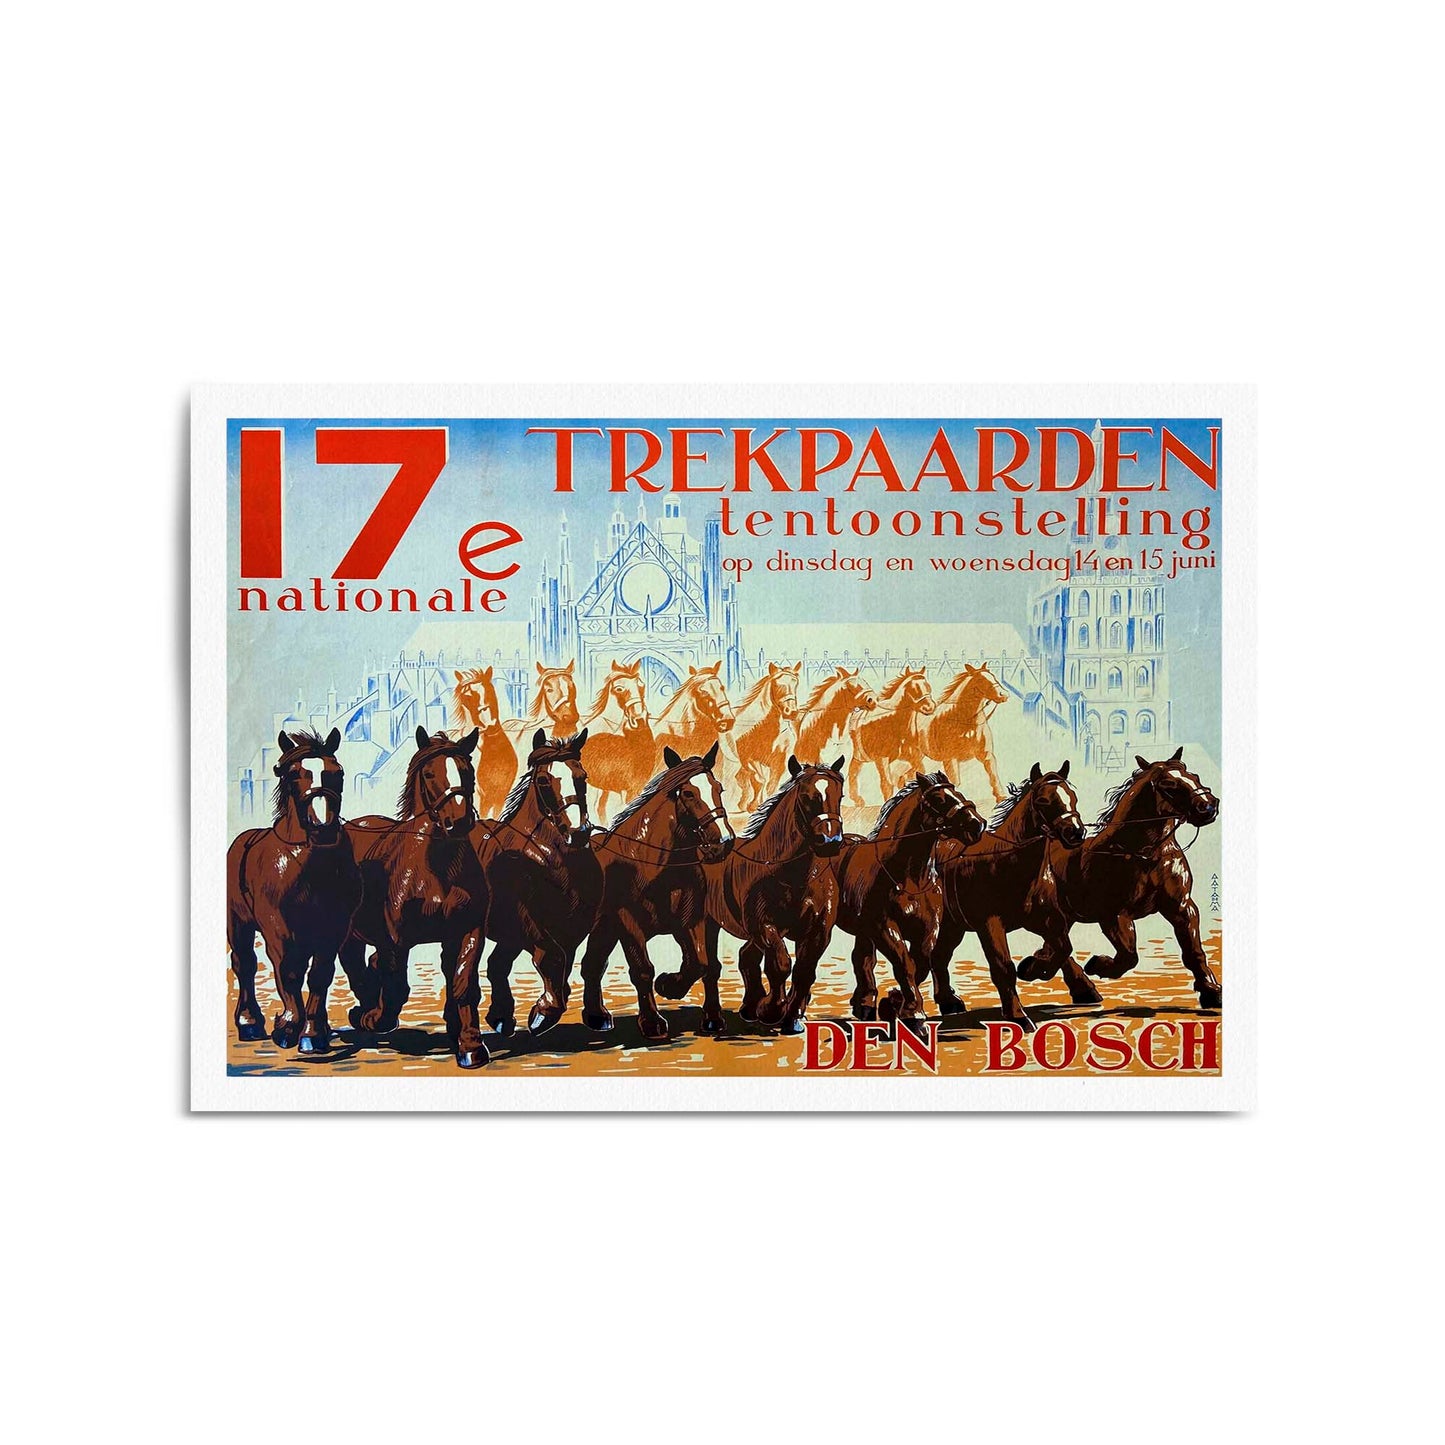 1925 Netherlands | Framed Vintage Travel Poster